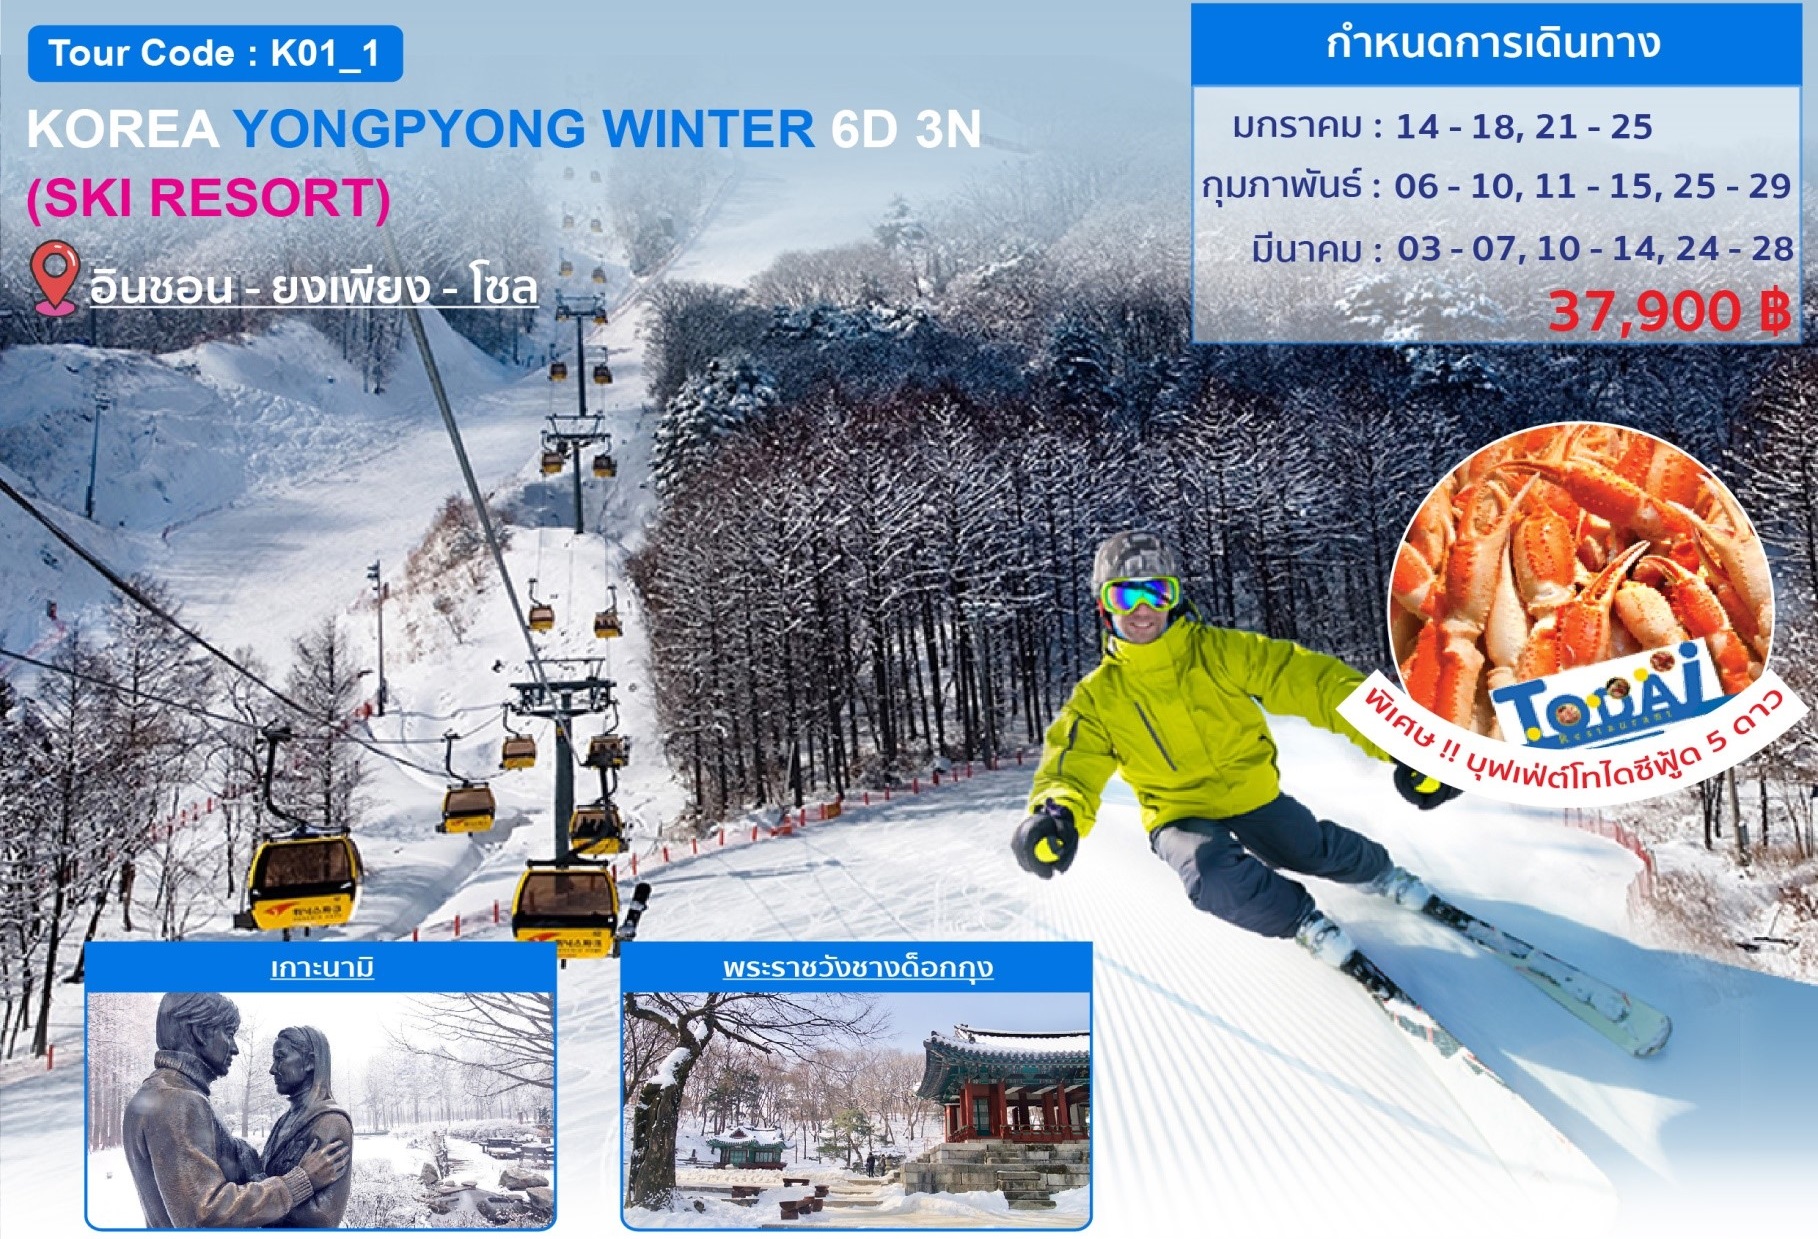 ทัวร์เกาหลี KOREA YONGPYONG WINTER SKI RESORT 6D 3N (TG) (MAR20) (K01_1)